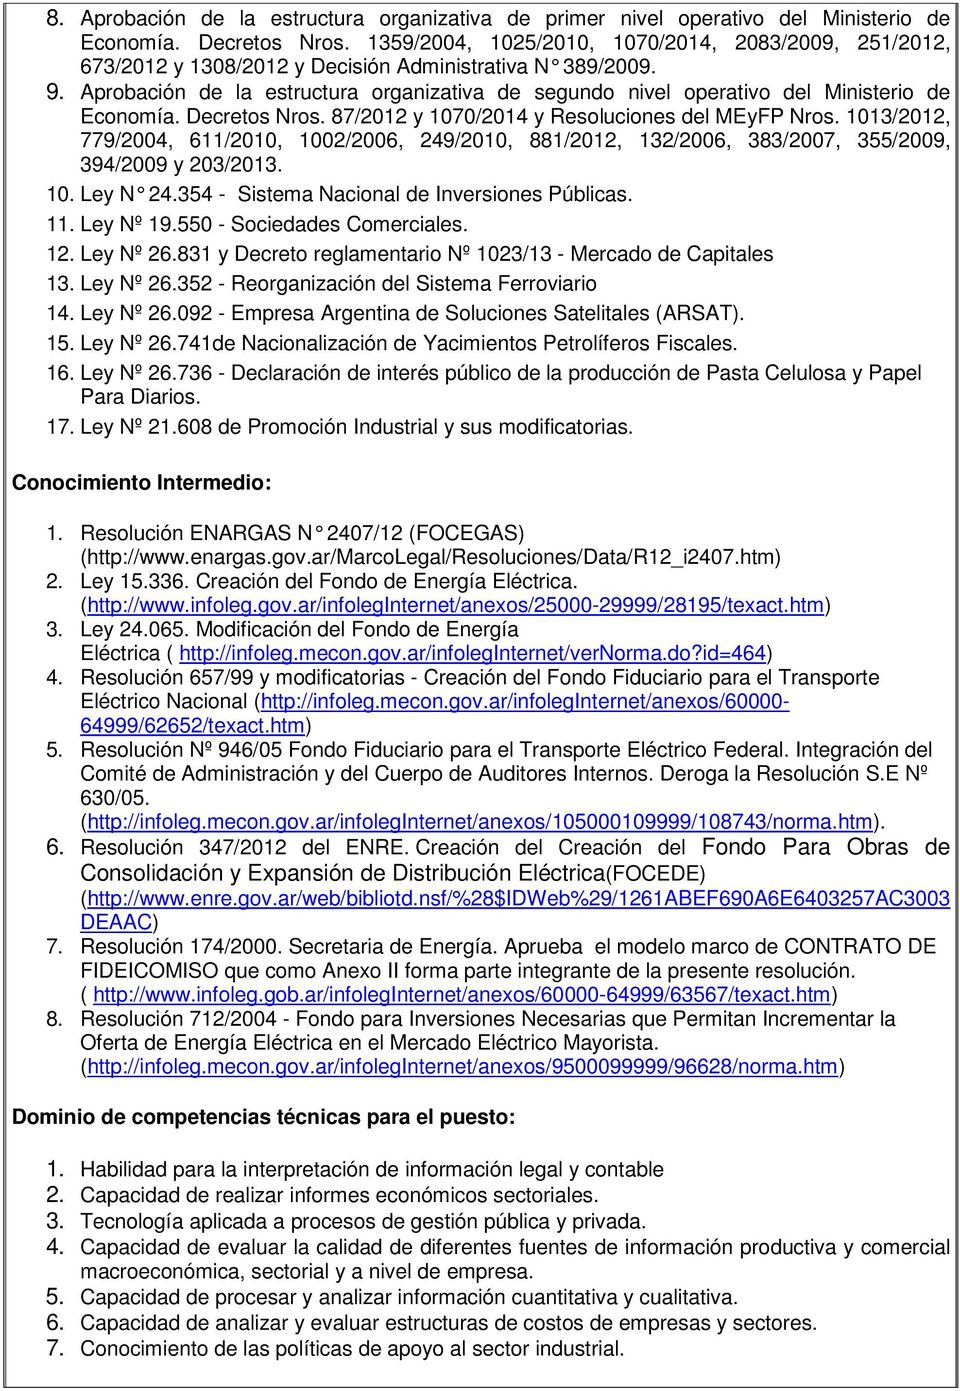 Aprobación de la estructura organizativa de segundo nivel operativo del Ministerio de Economía. Decretos Nros. 87/2012 y 1070/2014 y Resoluciones del MEyFP Nros.